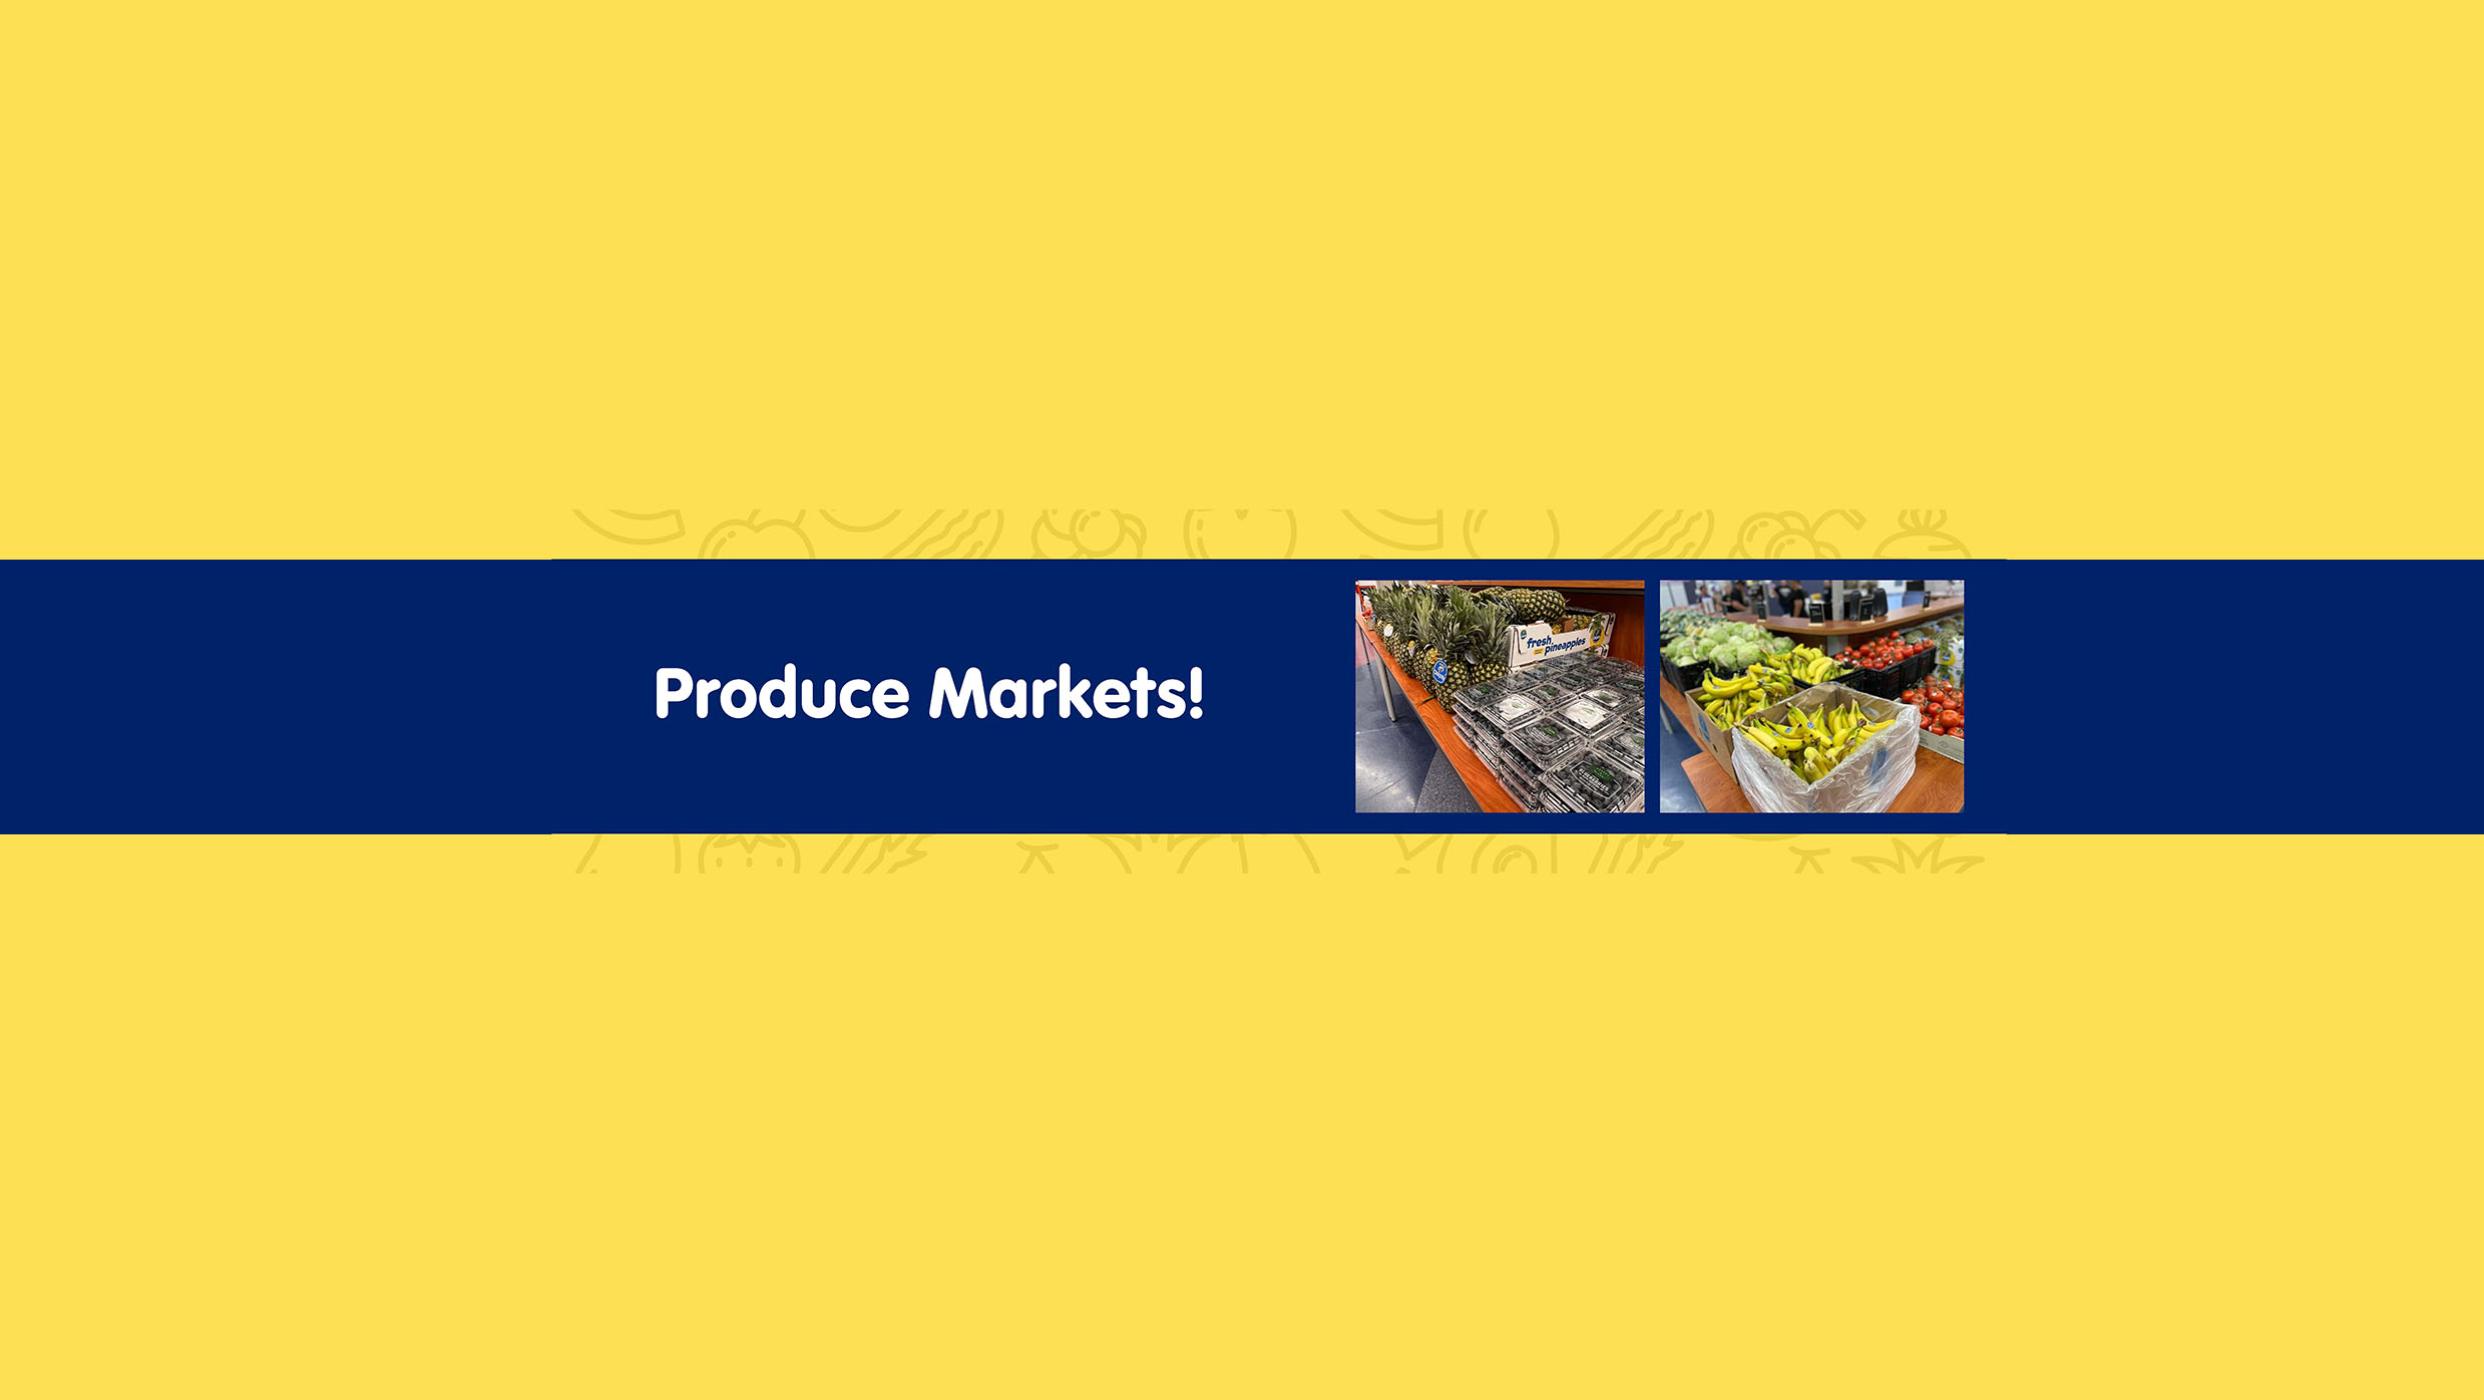 Produce Markets